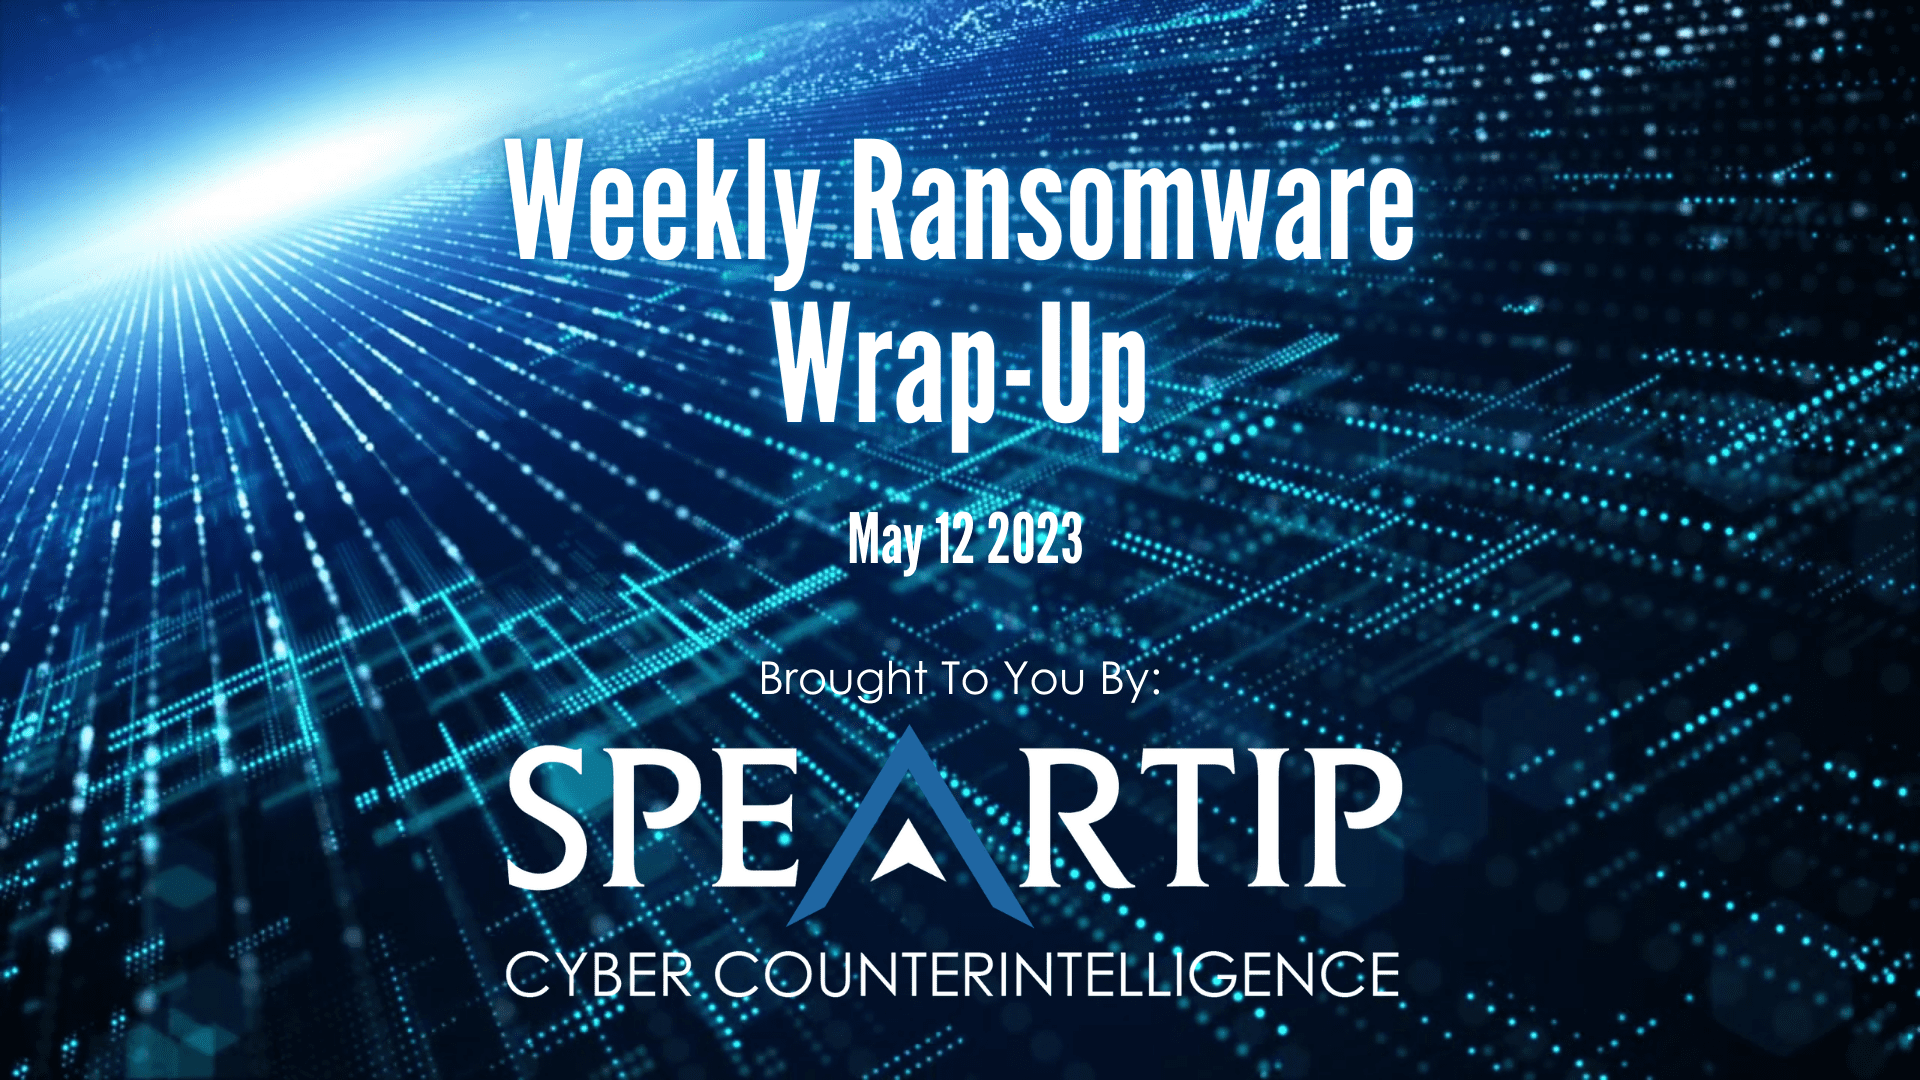 May 12, 2023 Ransomware Wrap-Up